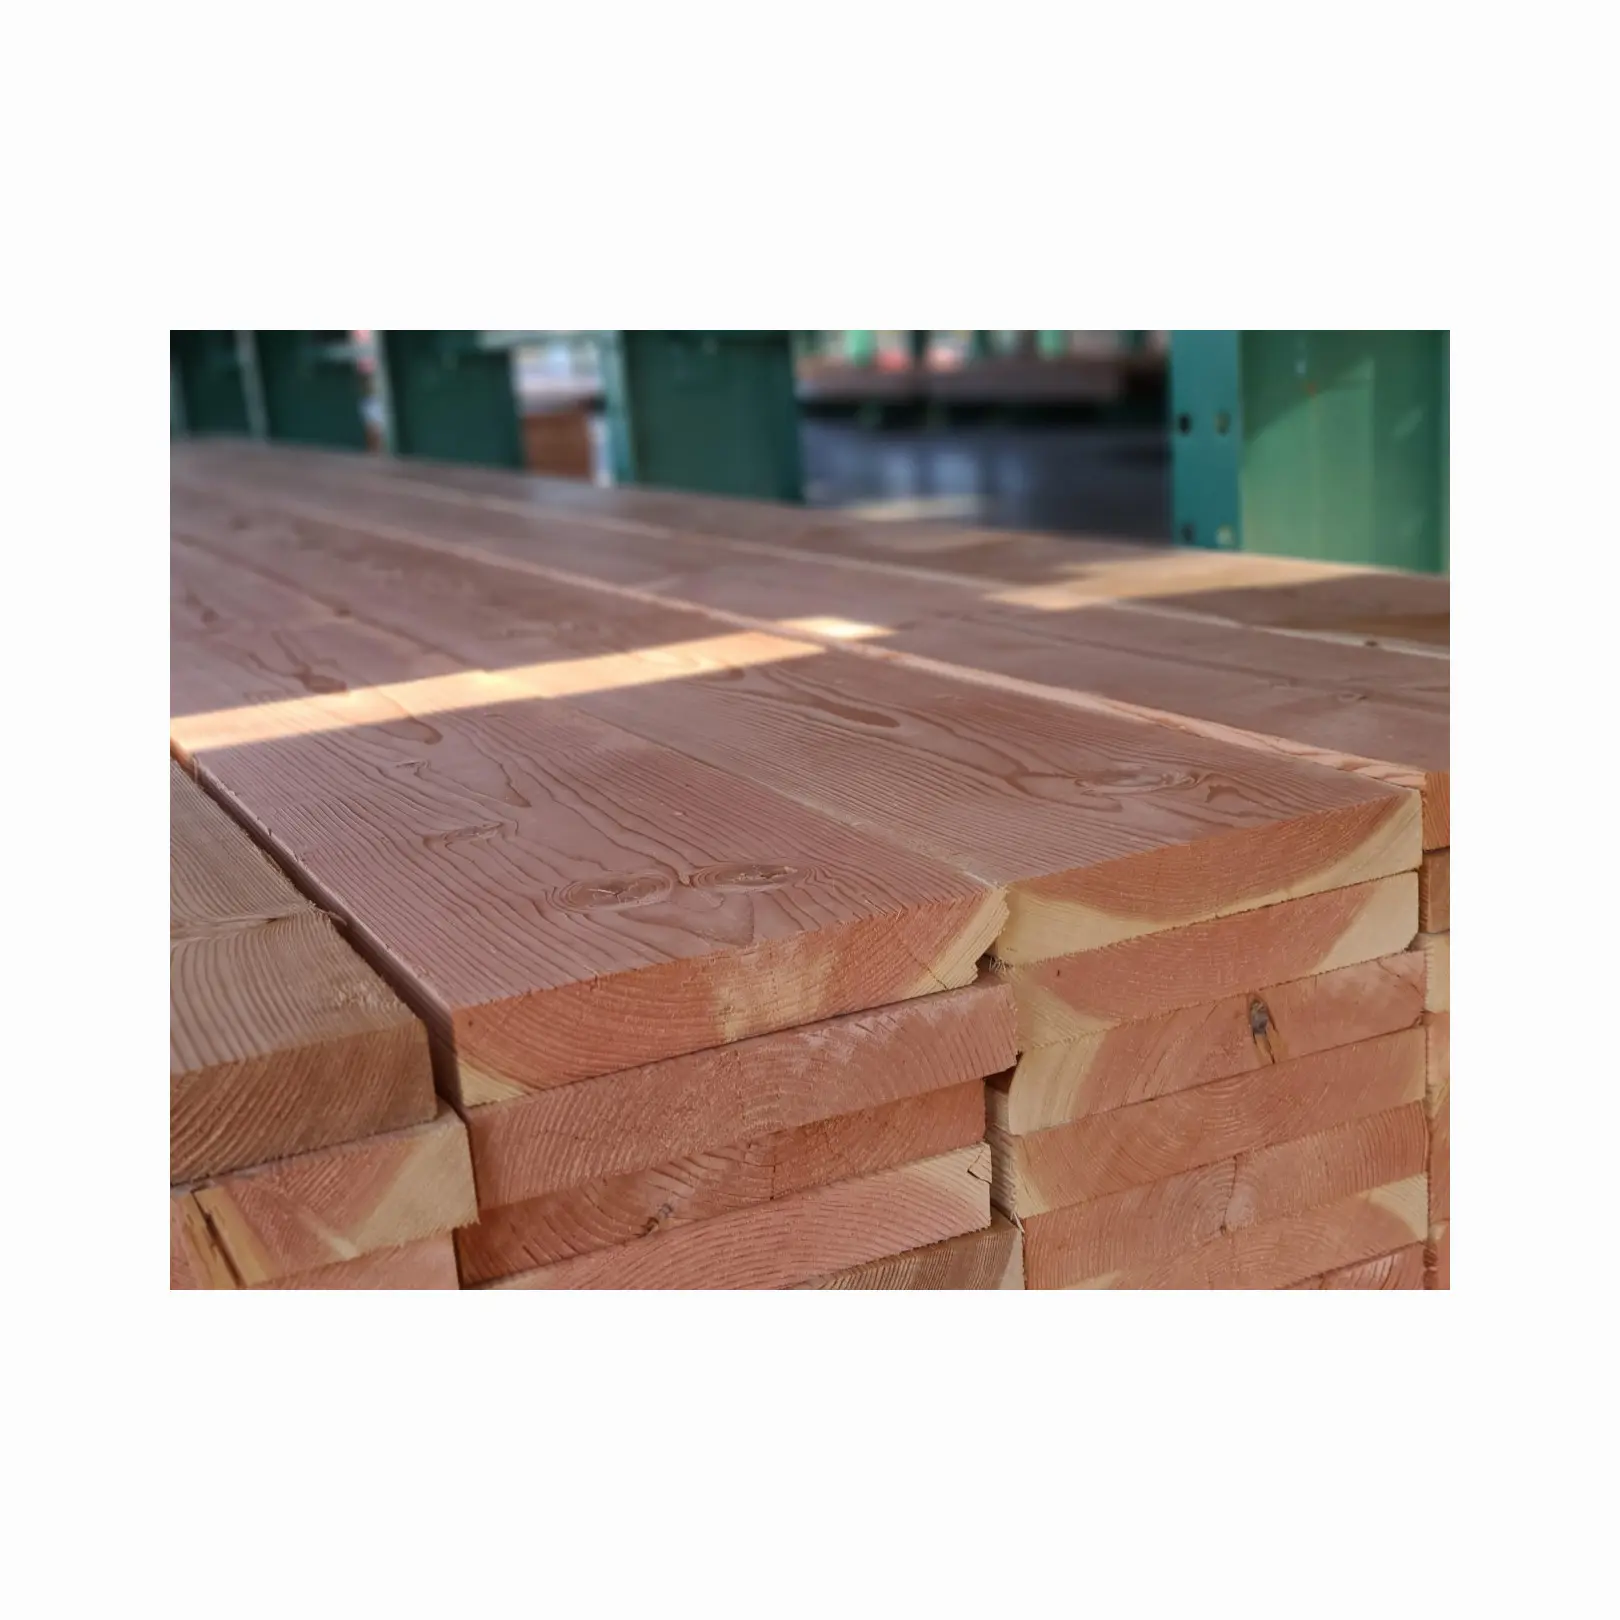 Traversine ferroviarie in legno duro legname DOUGLAS legname Rail Sleeper legno di abete utilizzato per la ferrovia